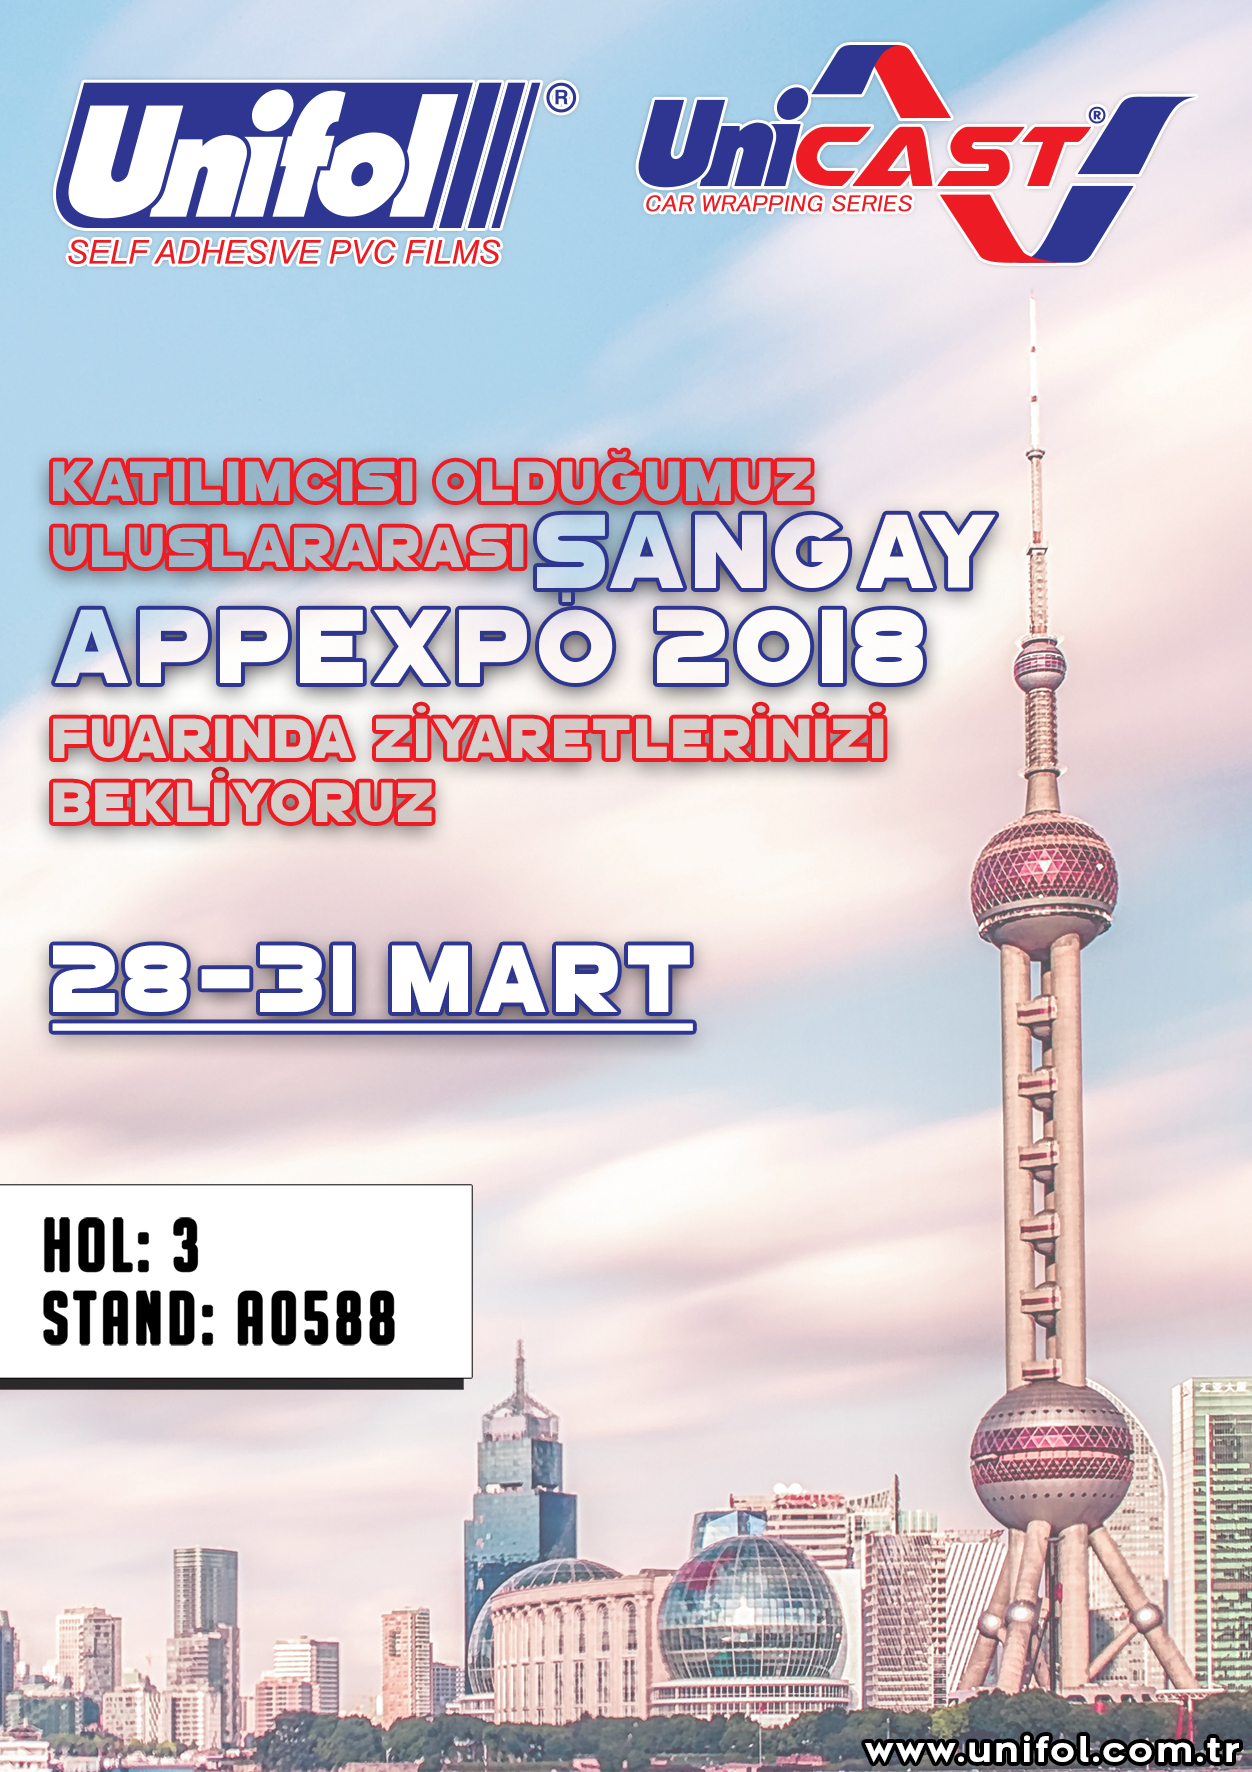 Apppexpo Şangay 2018